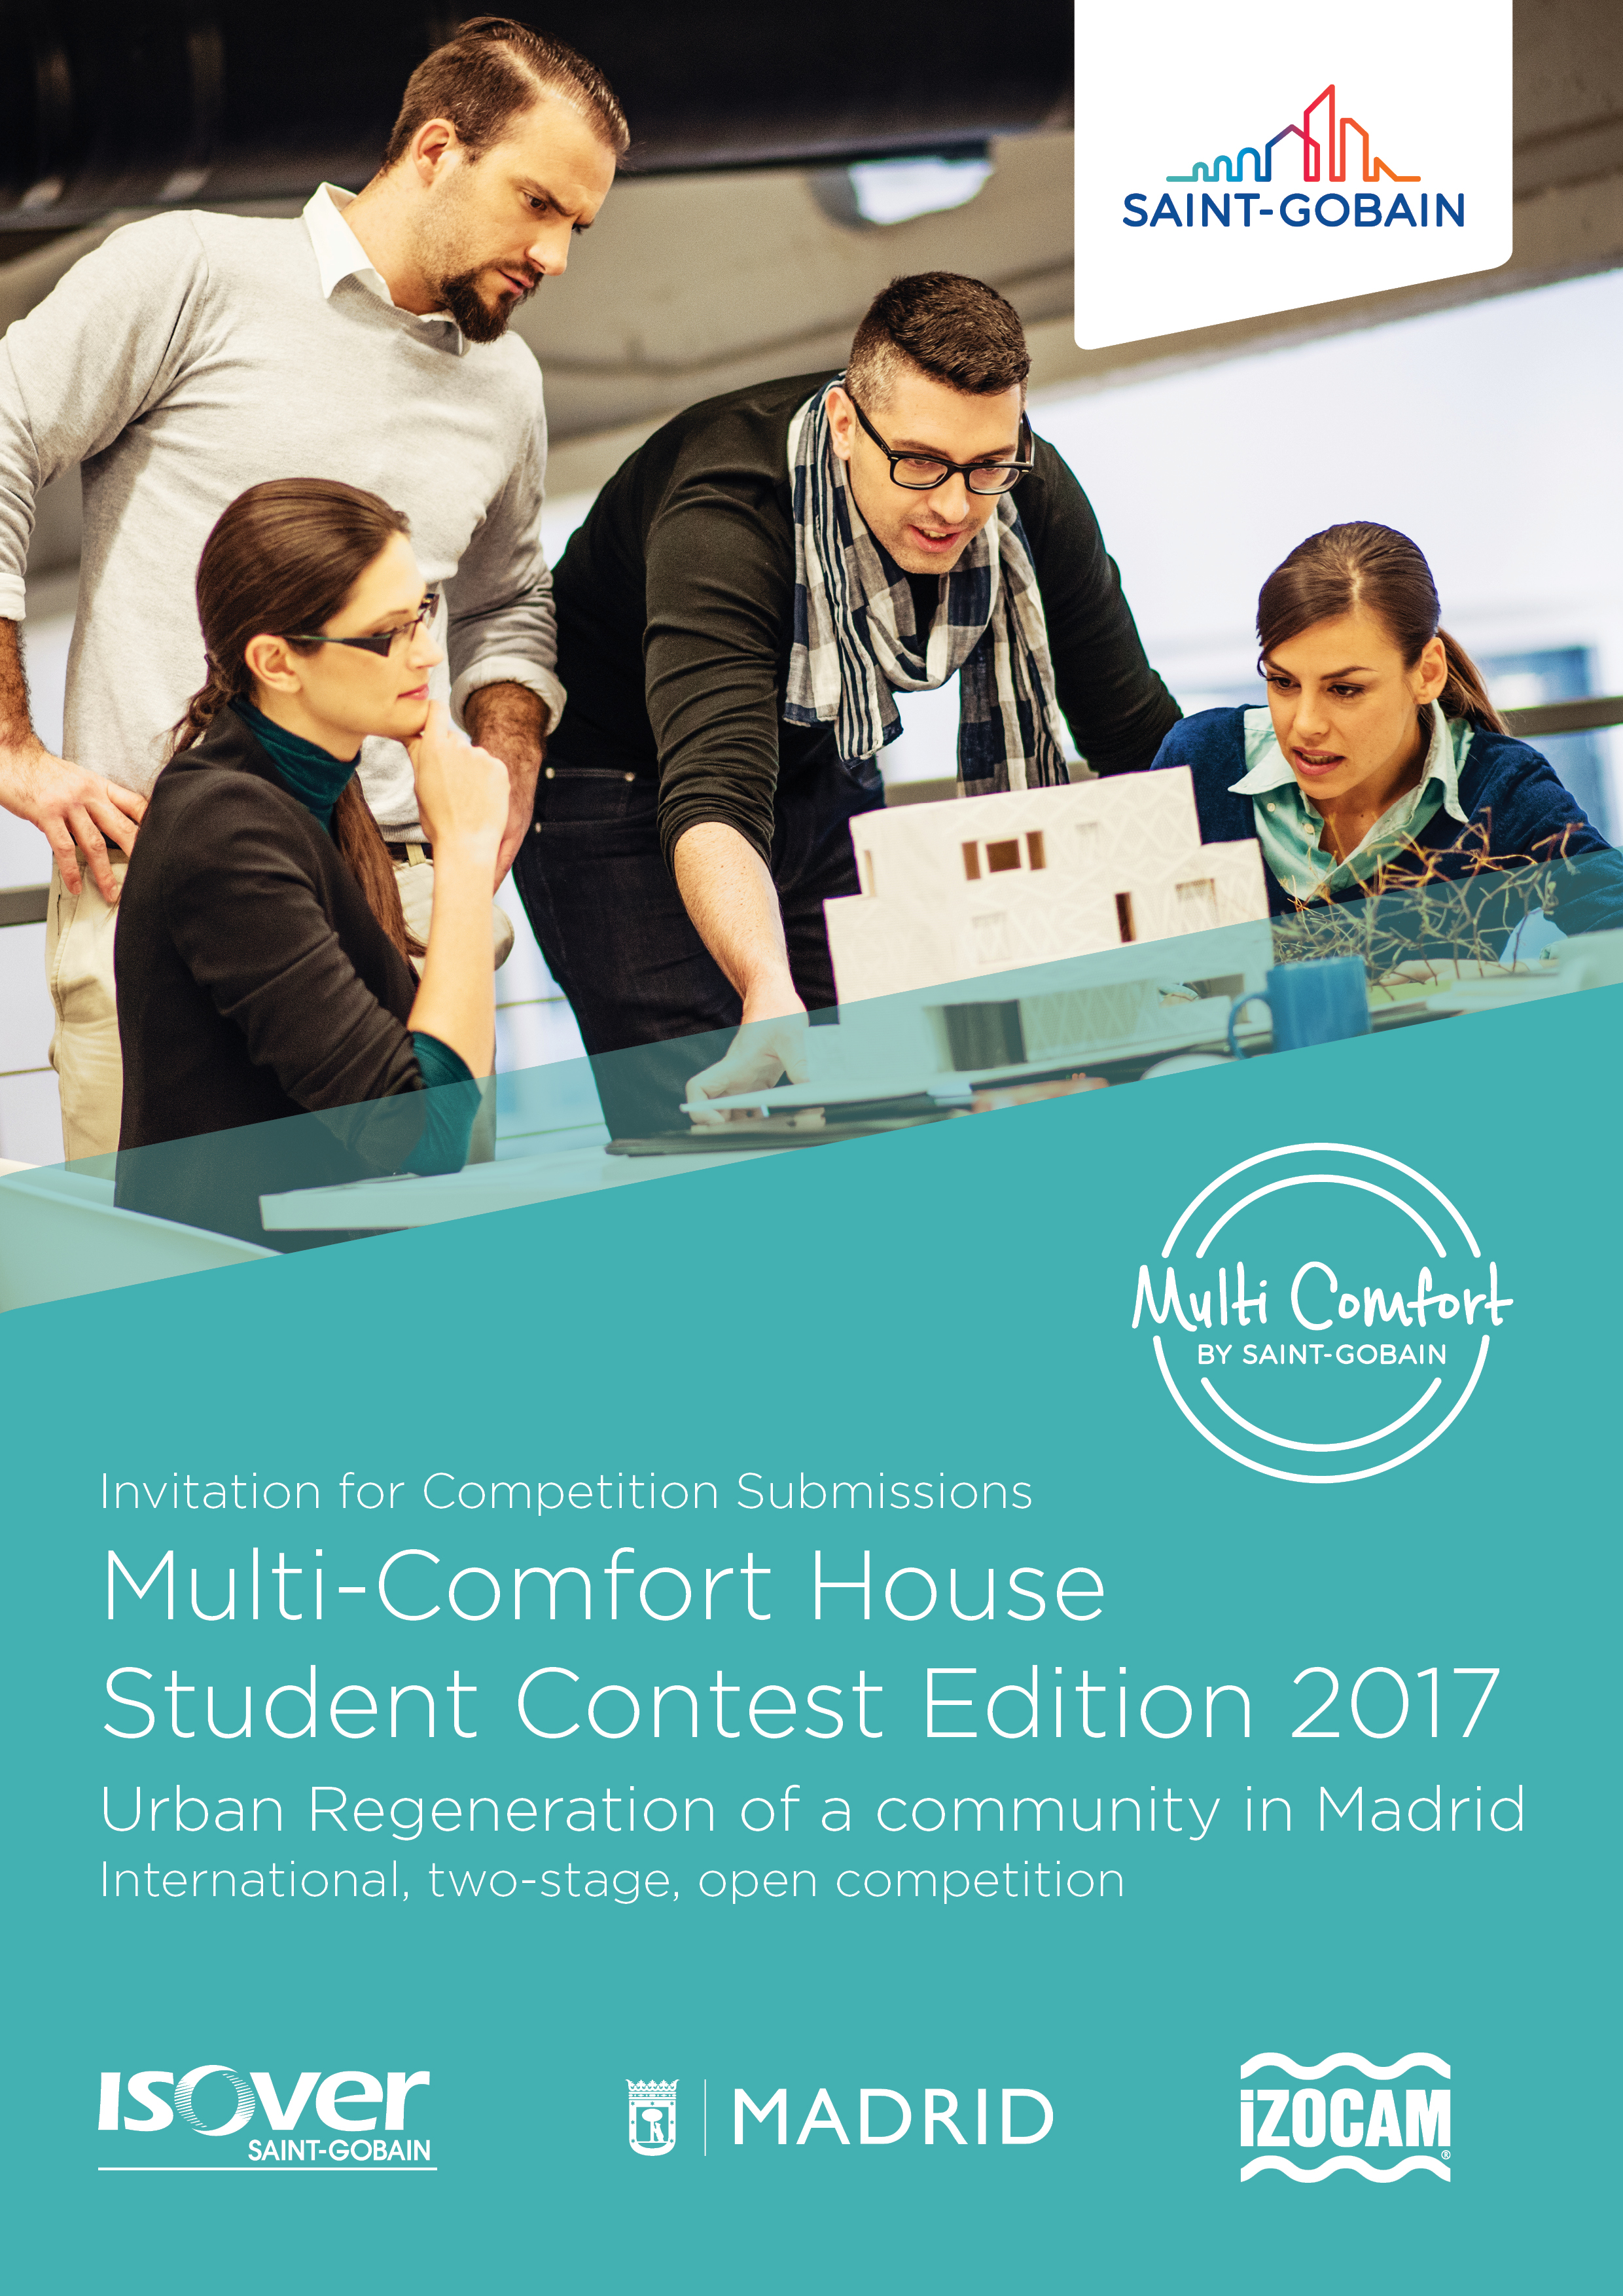 Concursul de arhitectura pentru studenti “Multi-Comfort House Students Contest” editia 2017 - Concursul de arhitectura pentru